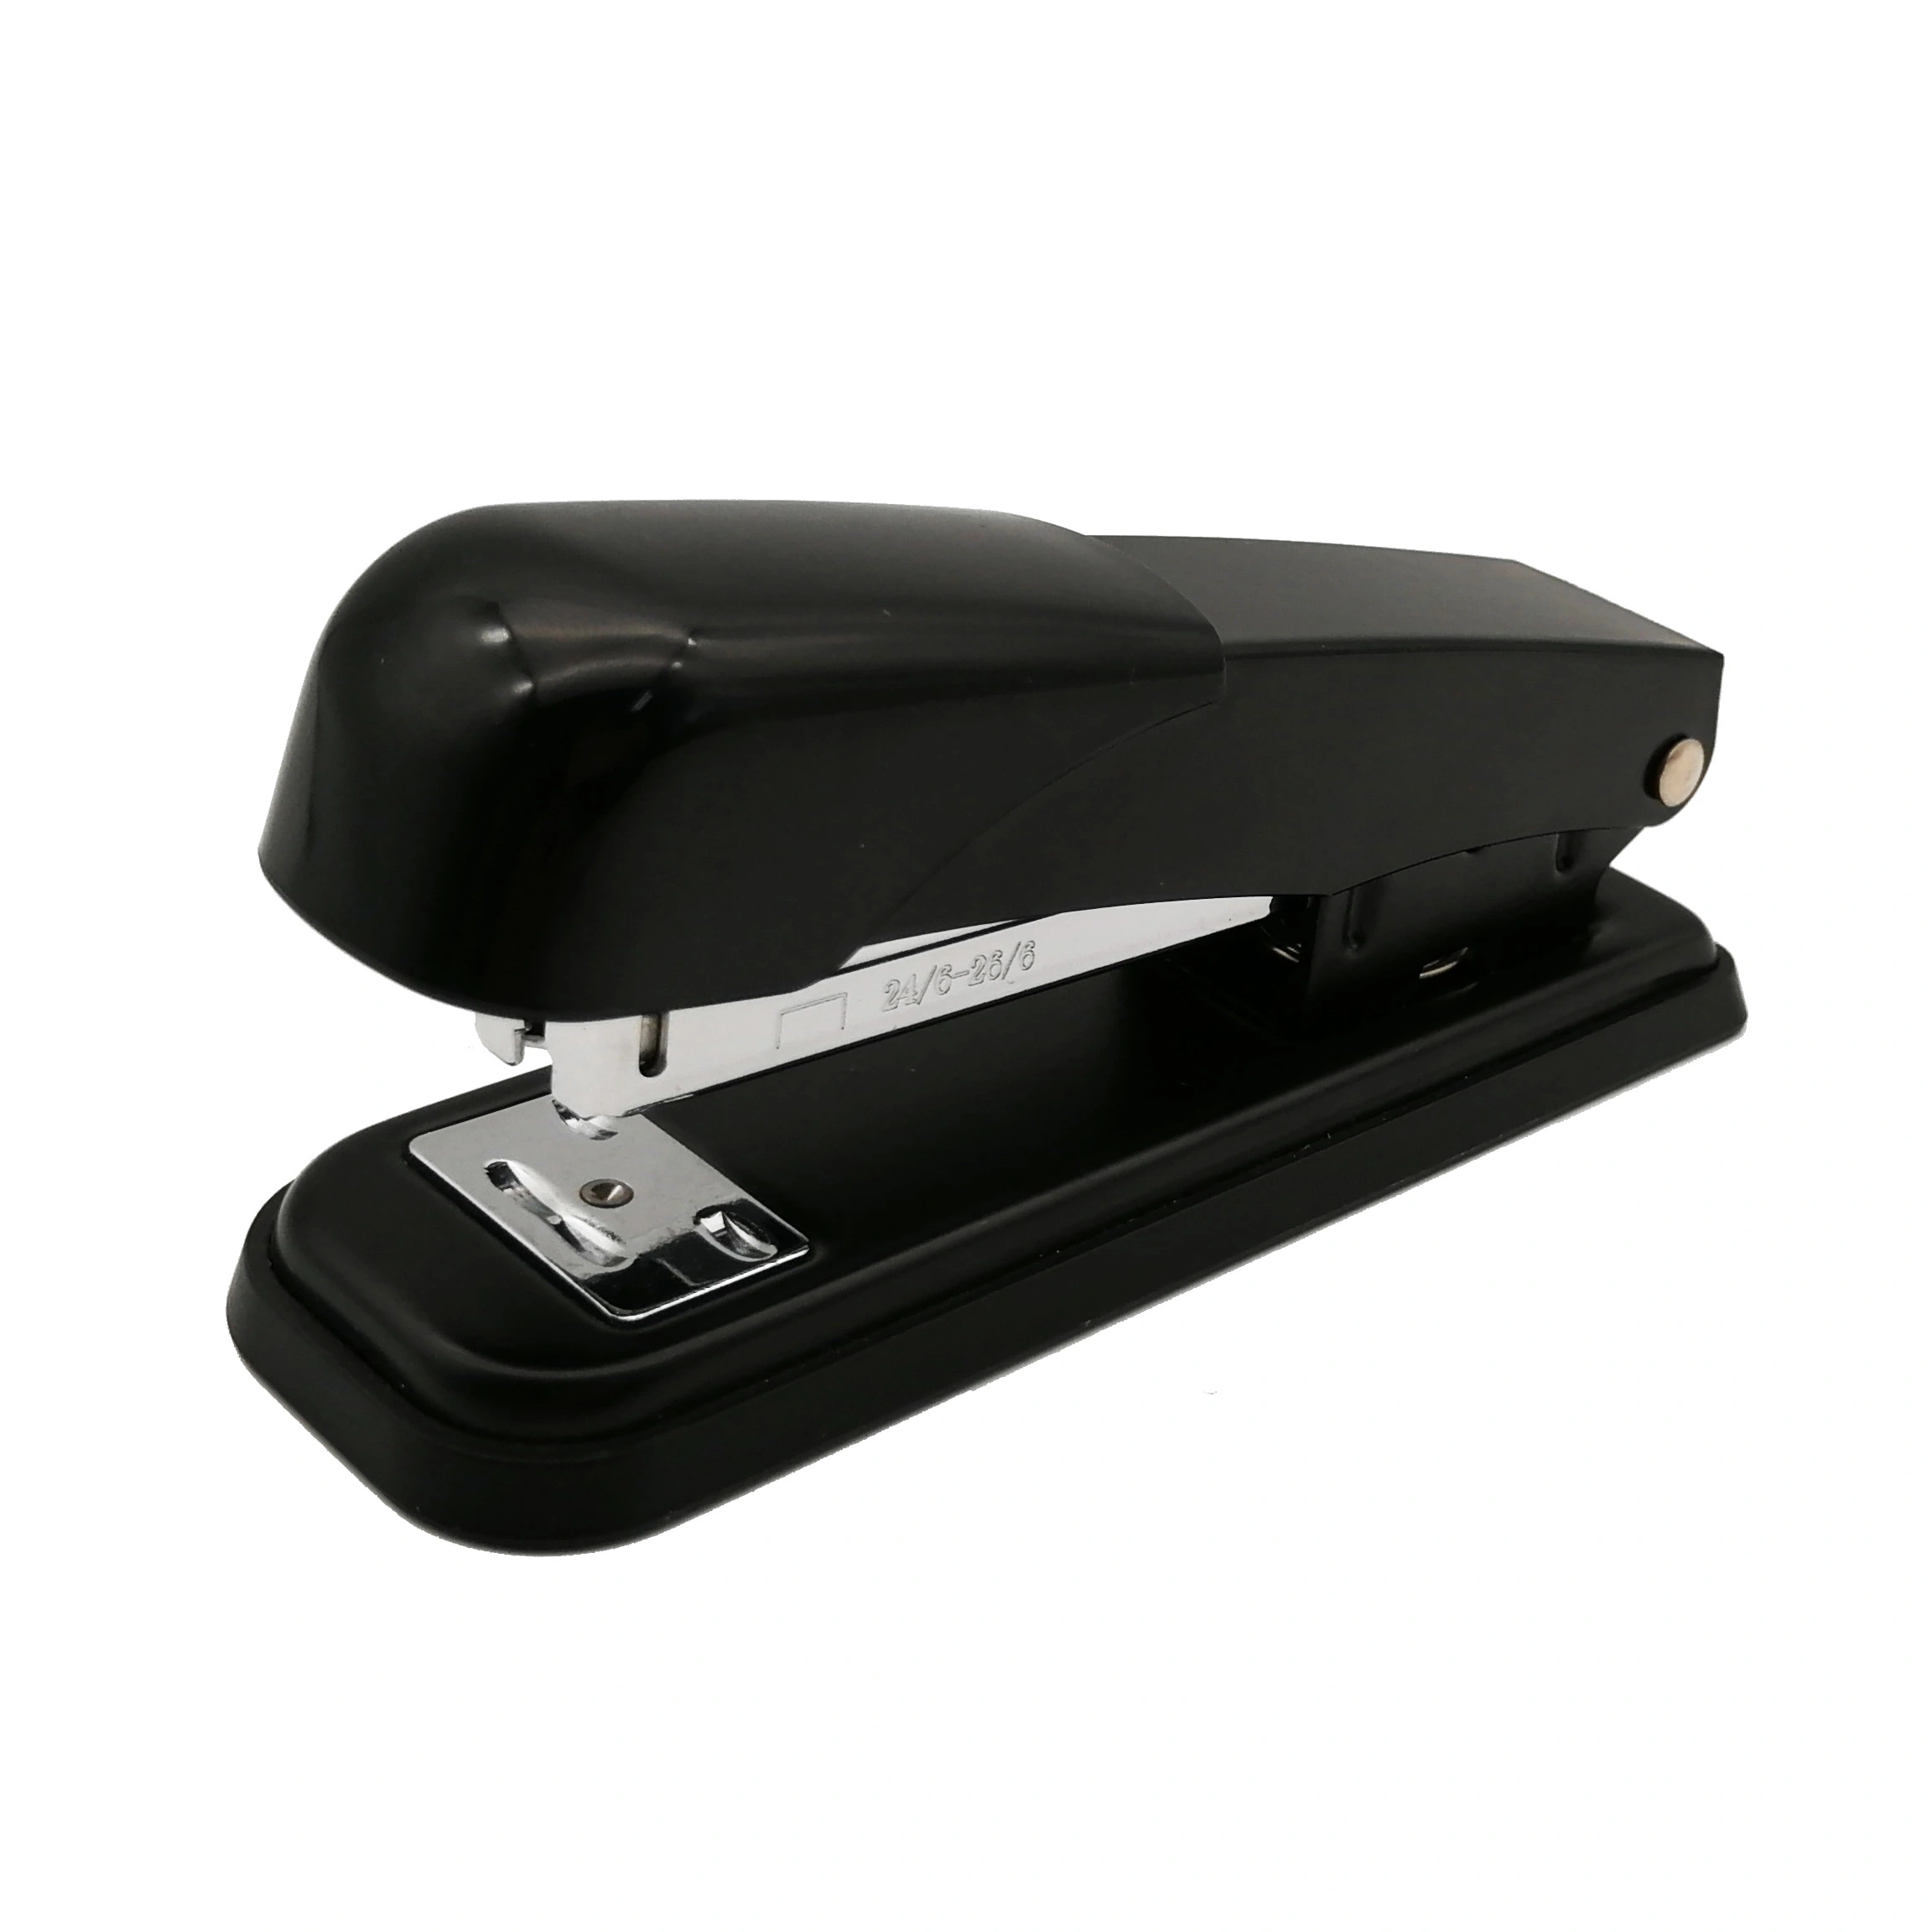 24/6 office stapler